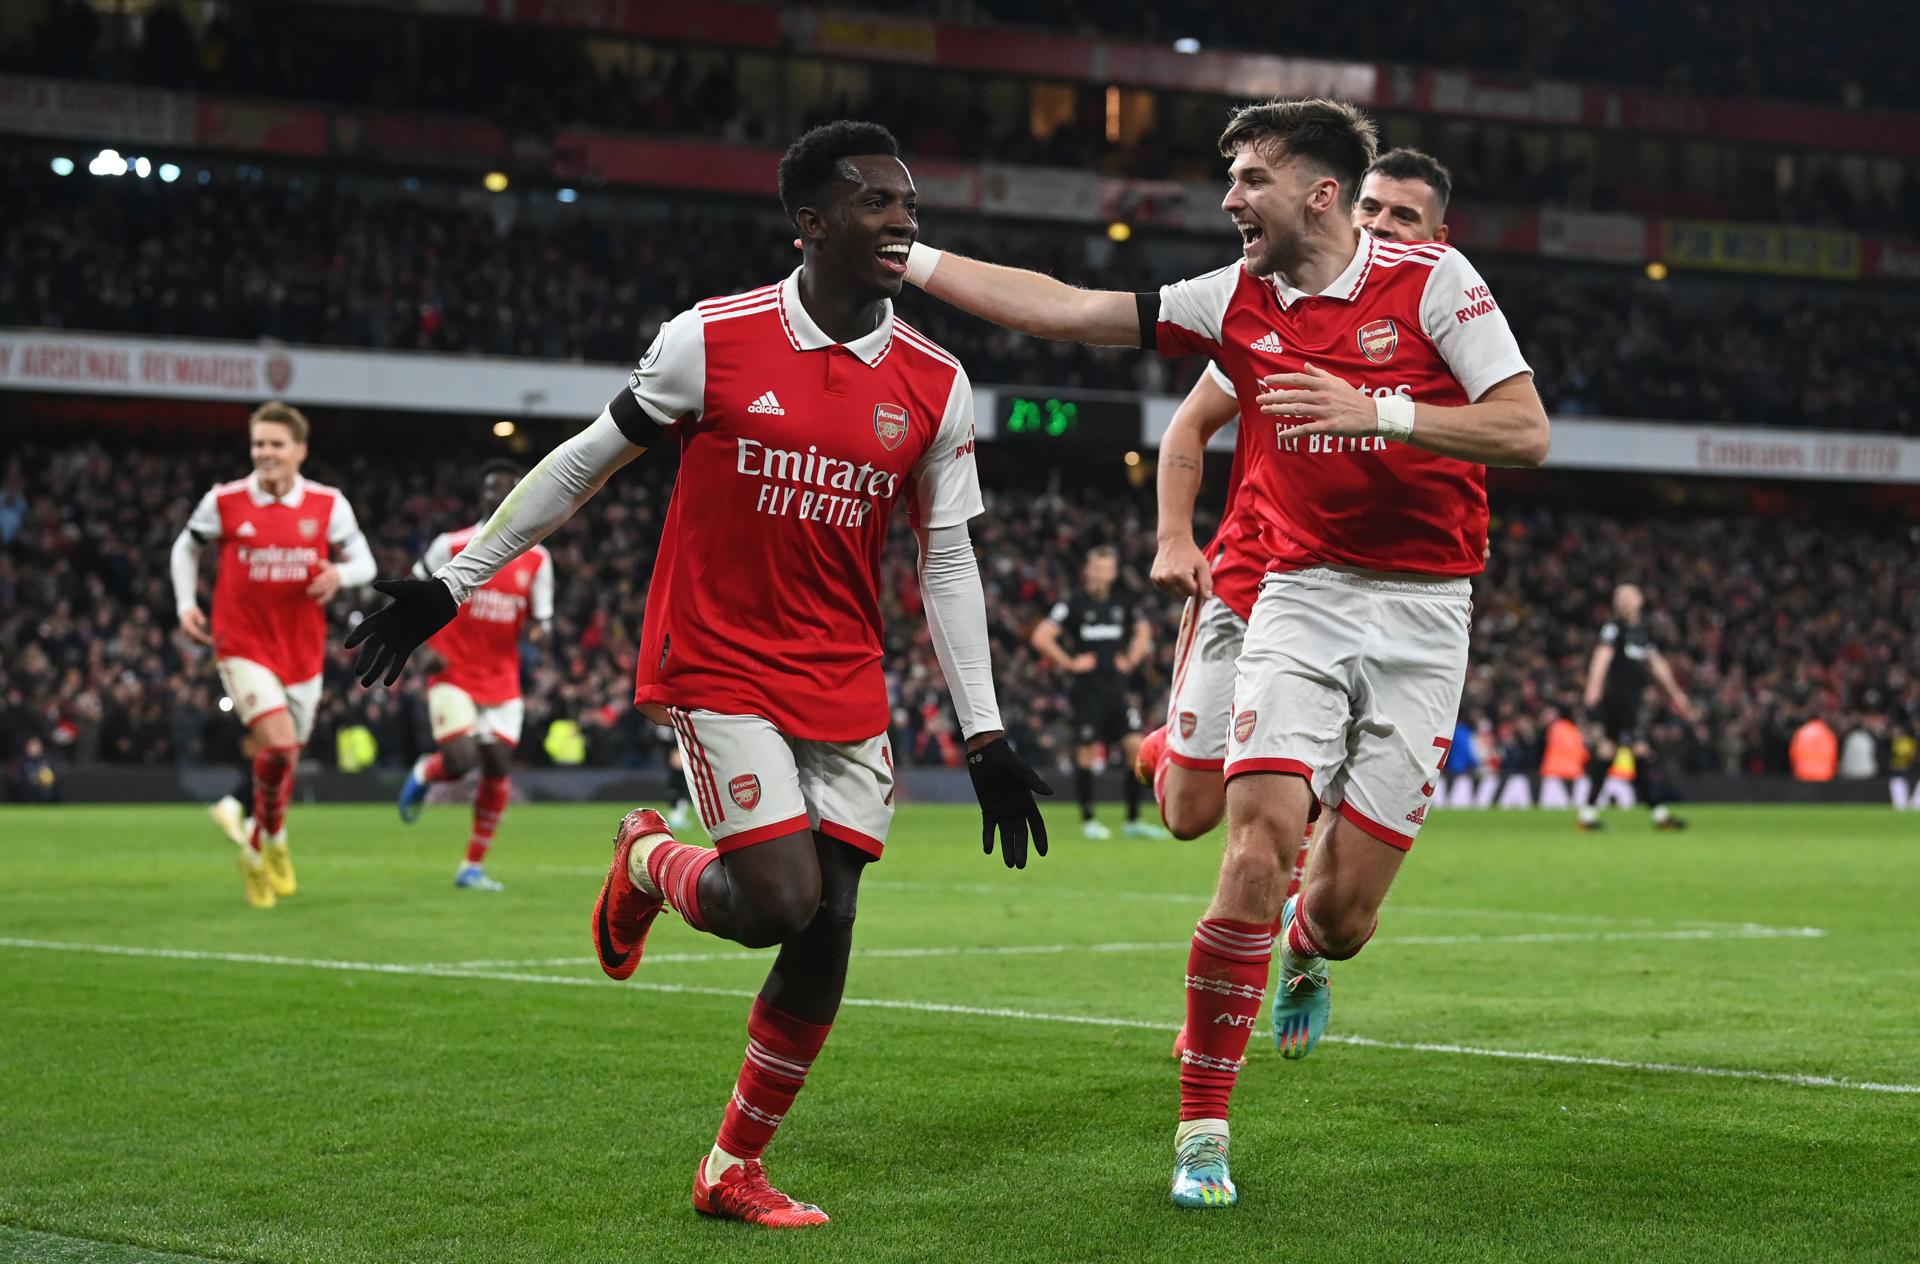 Arsenal recibió el “Boxing Day” mucho más líder